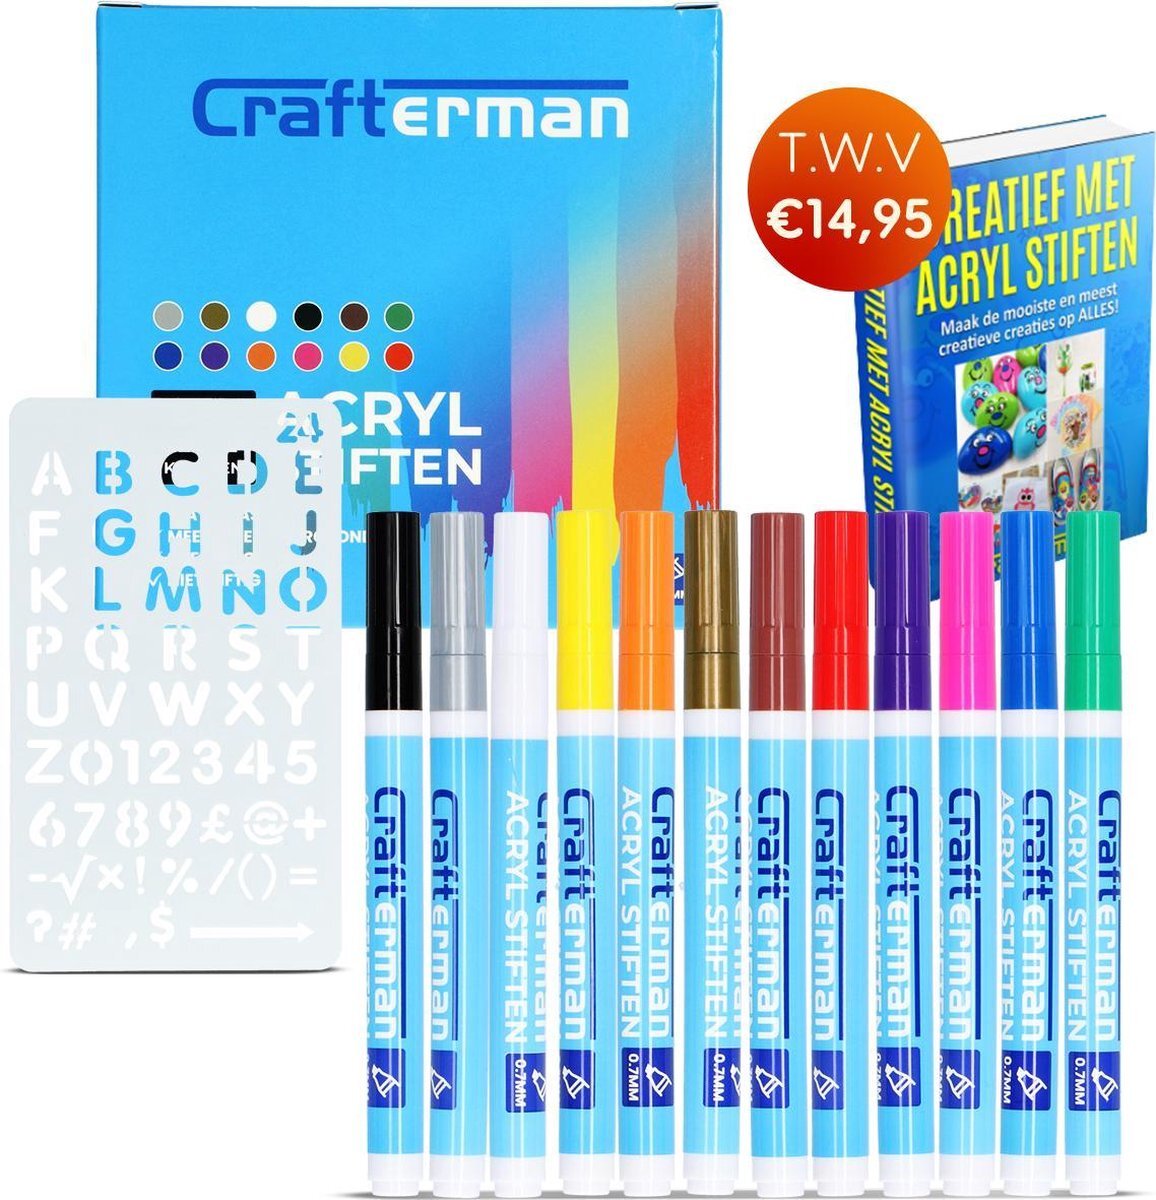 Crafterman Crafterman®? 12 st. Acryl Stiften set - Met Stencil & eBook - Happy Stones - Voor Stenen Schilderen - Verfstiften - Acrylverf